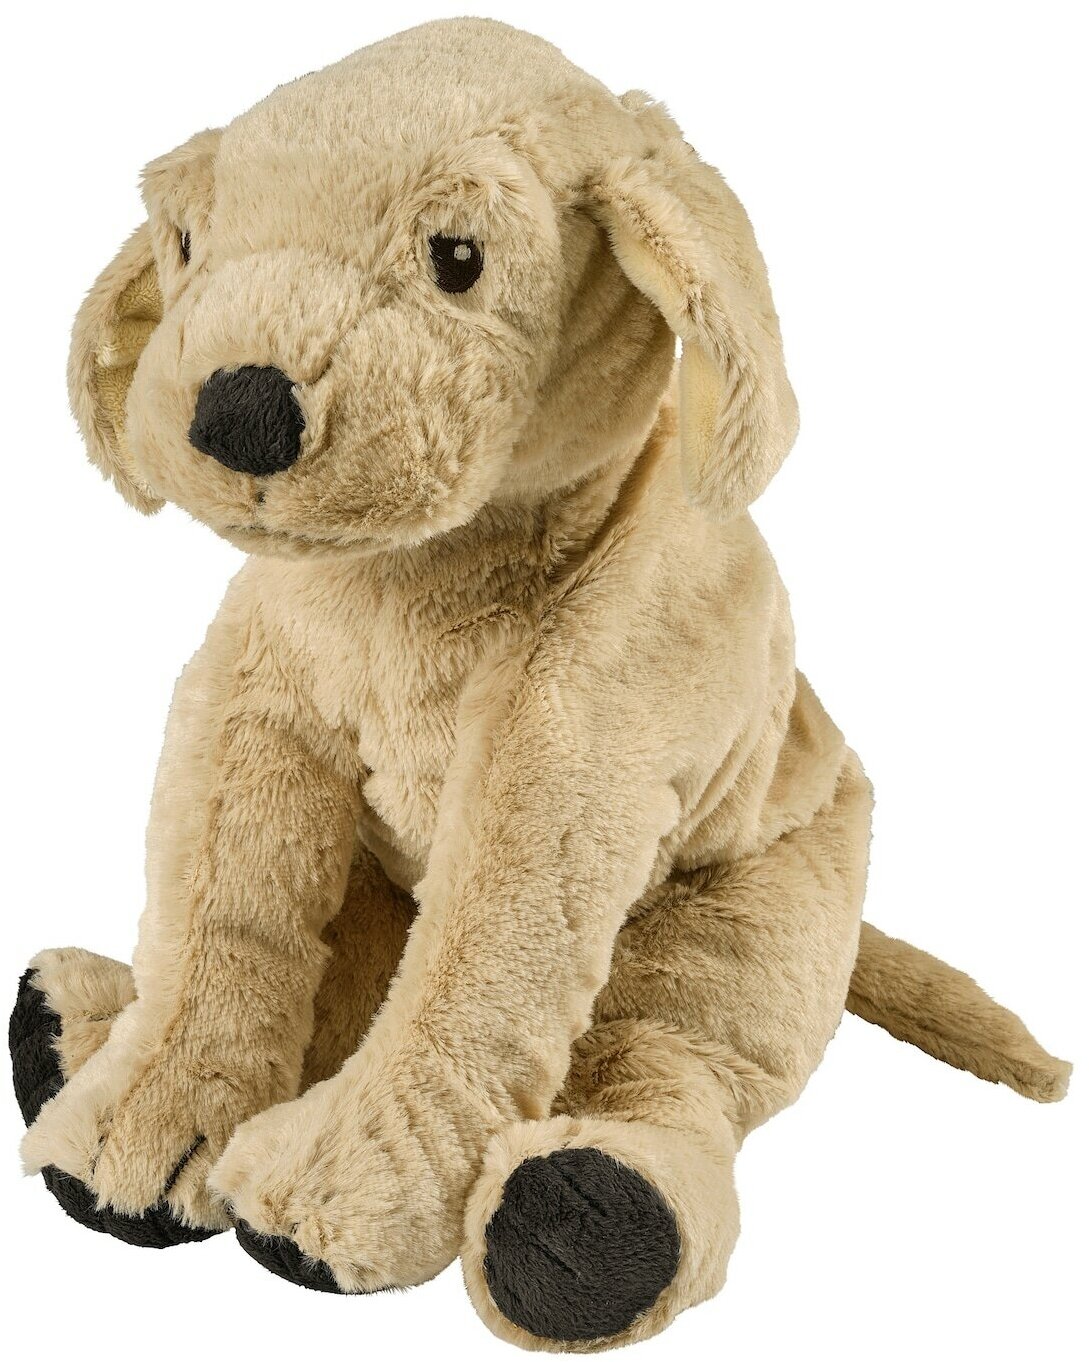 Мягкая игрушка собака/золотистый ретривер Шведский Дом (аналог икеа госиг голден), 40 см